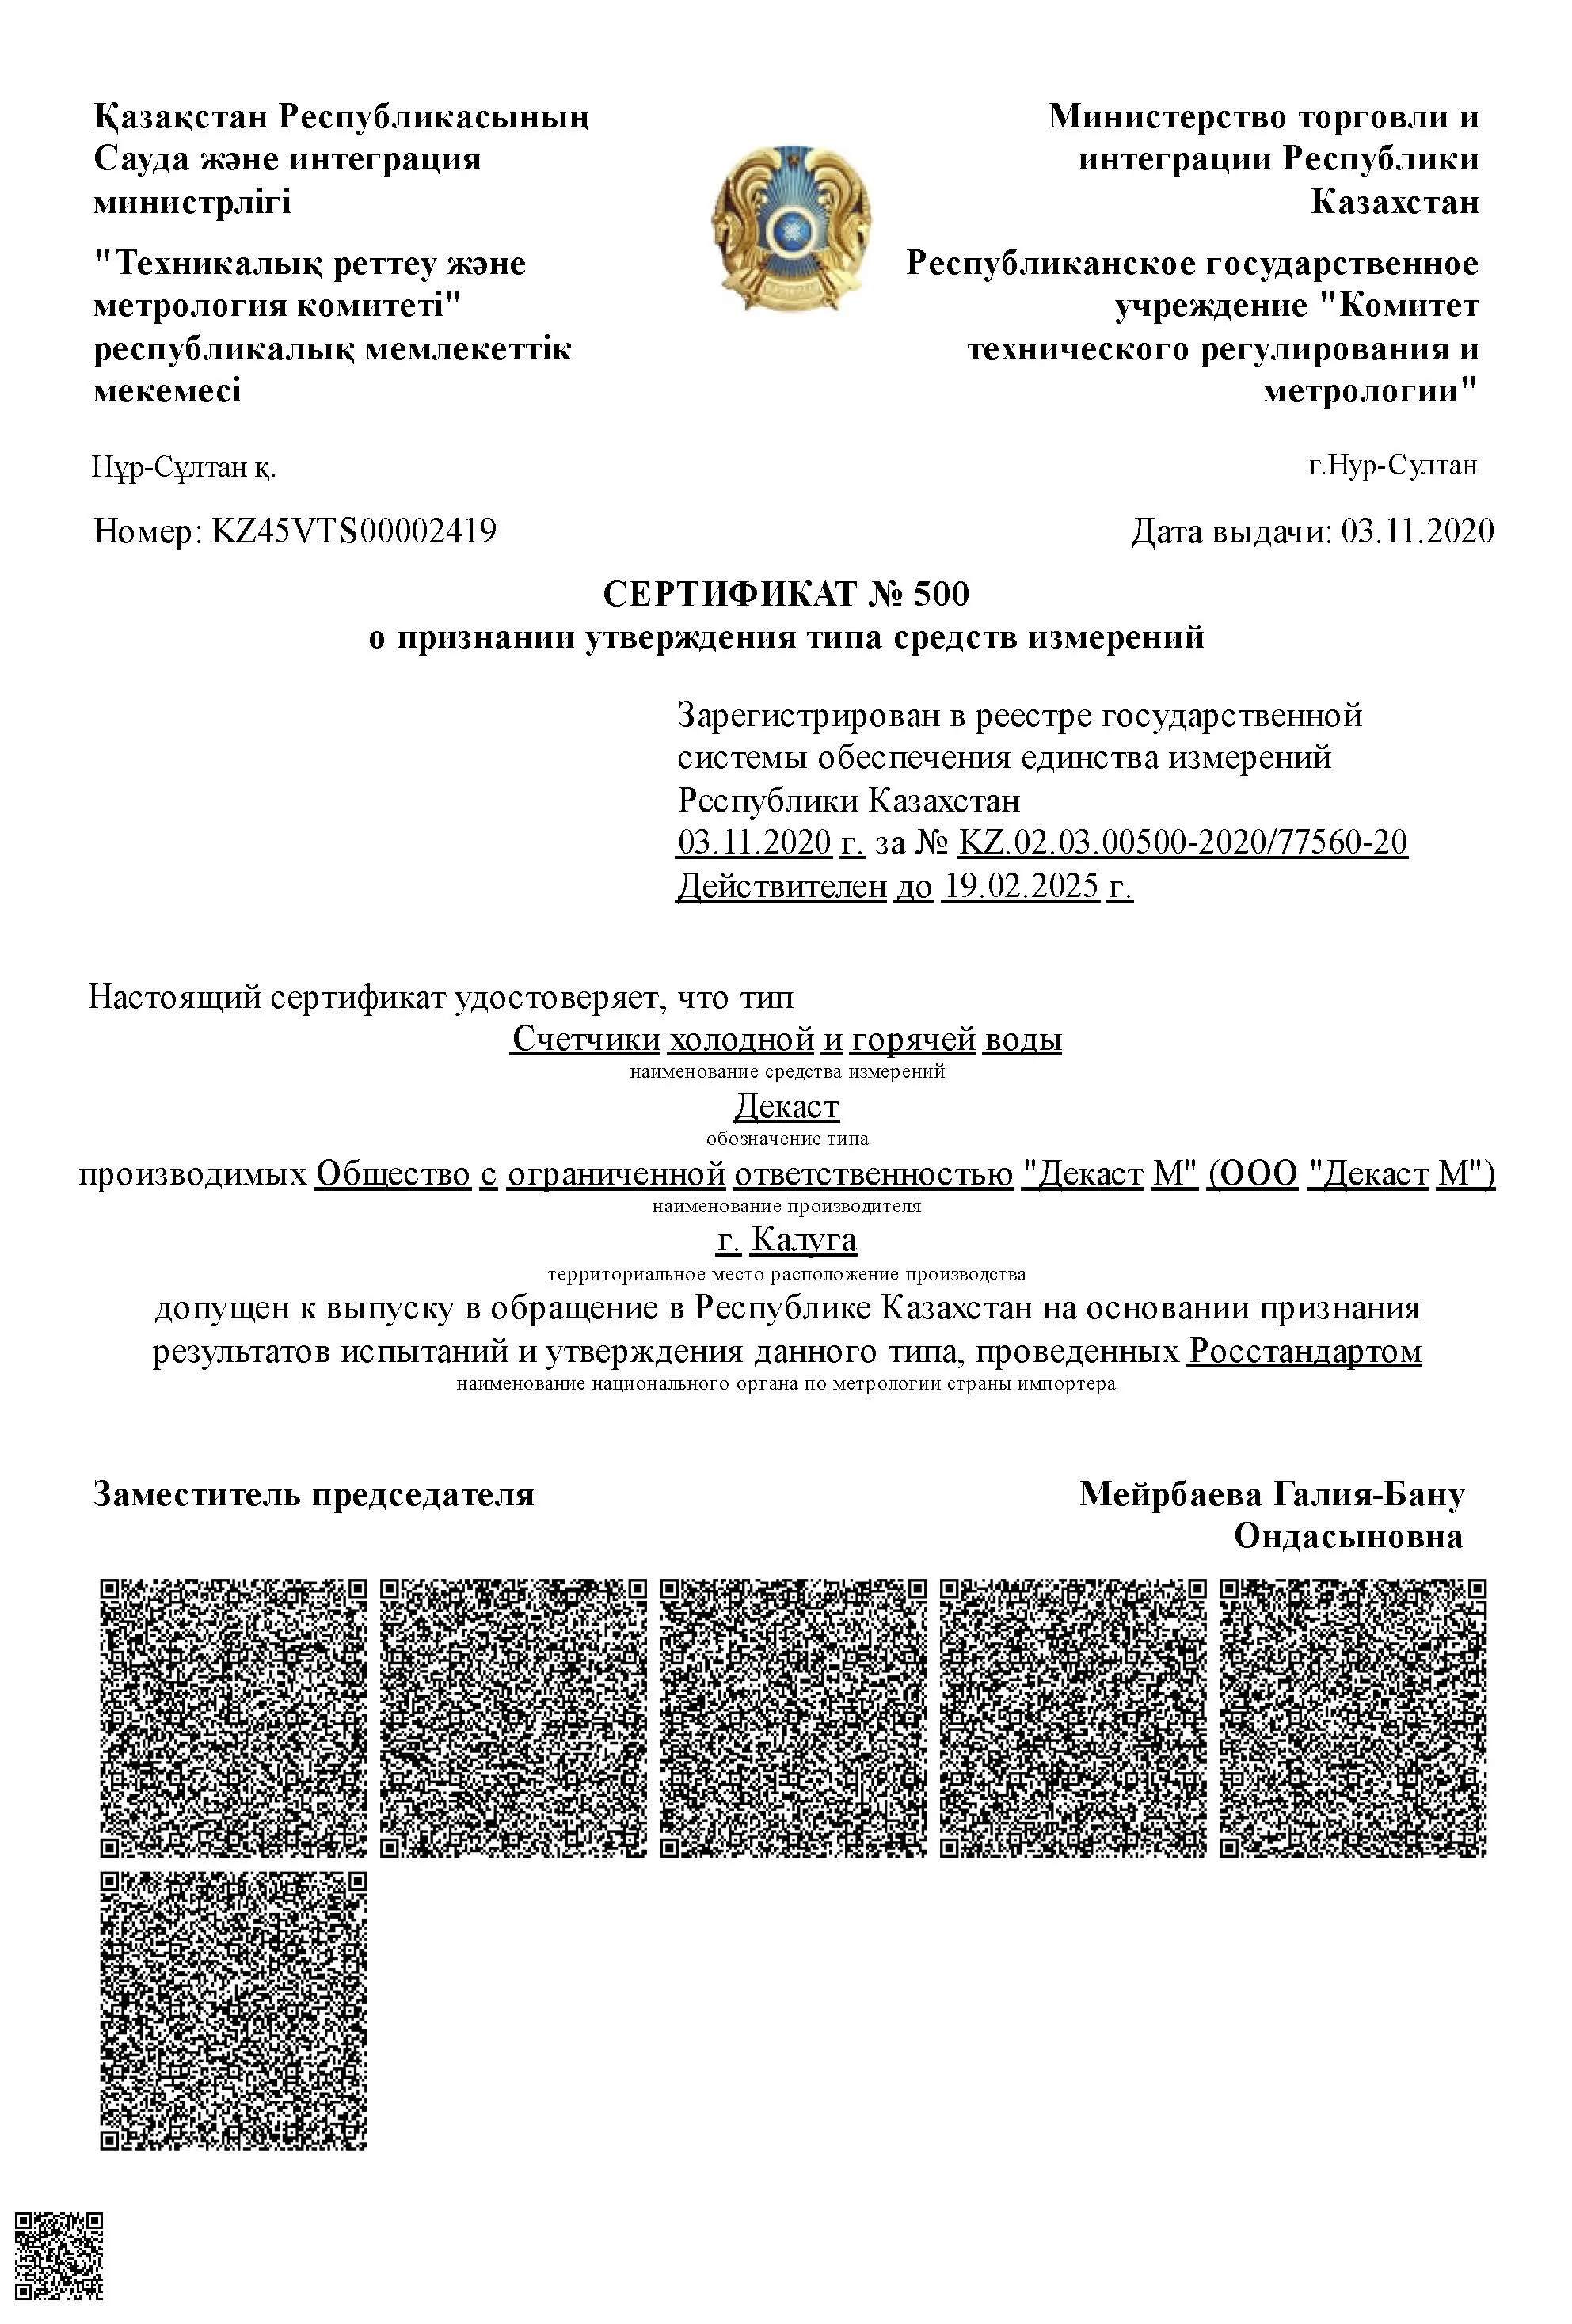 Сертификат о признании утверждения типа Счетчики холодной и горячей воды Декаст, Казахстан, до 19.02.2025